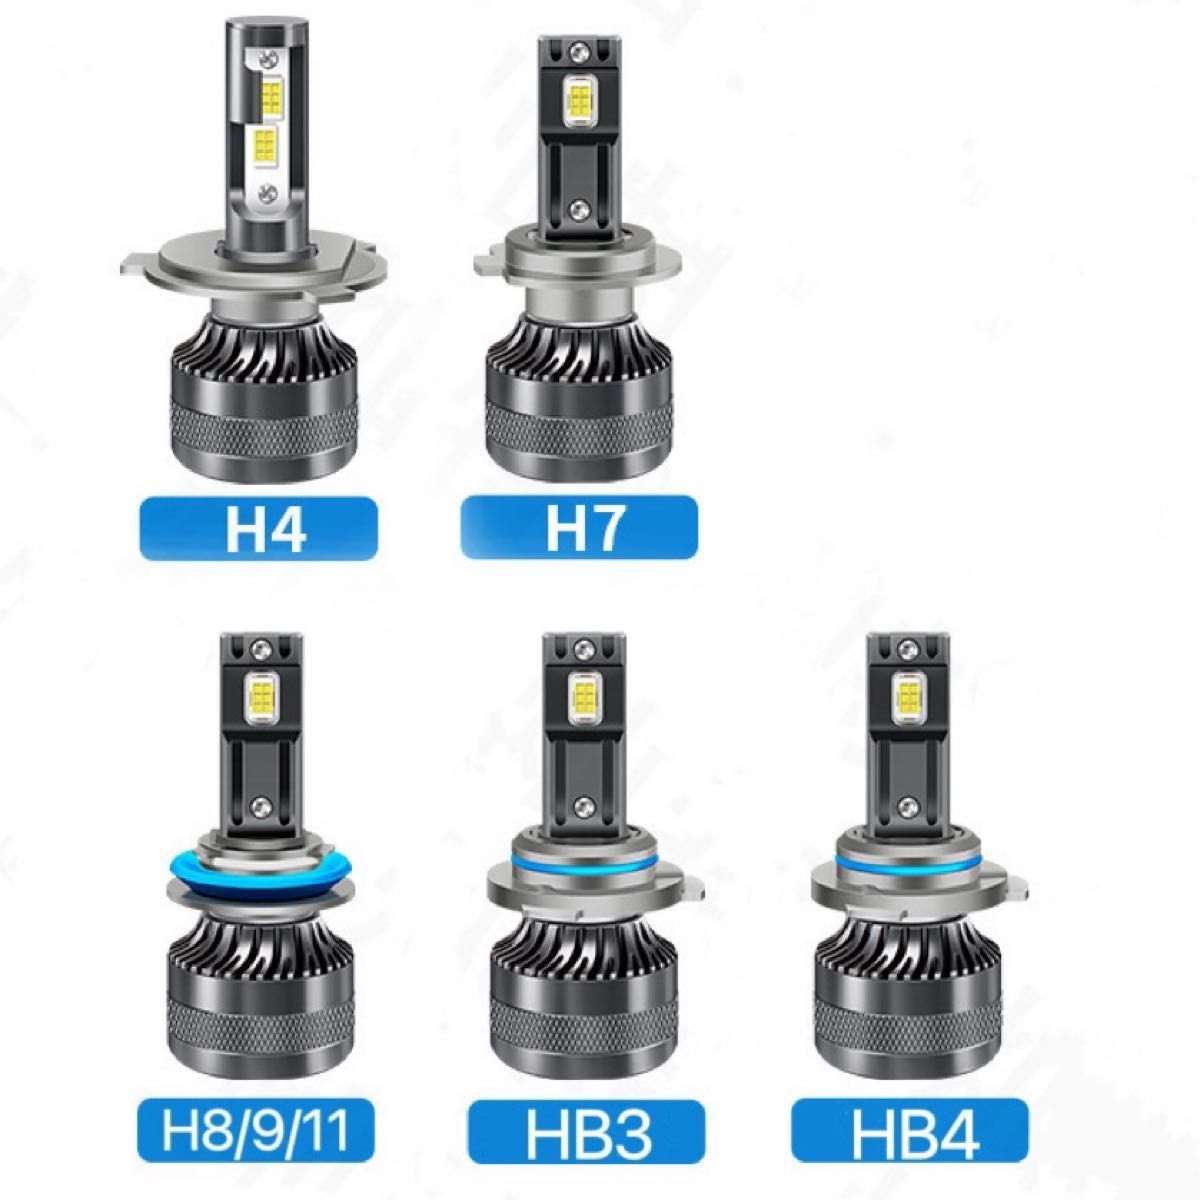 LED ヘッドライト バルブ フォグランプ 車 Hi/Lo 車検対応 H4 H7 H8 H9 H10 H11 HB3 HB4 車a